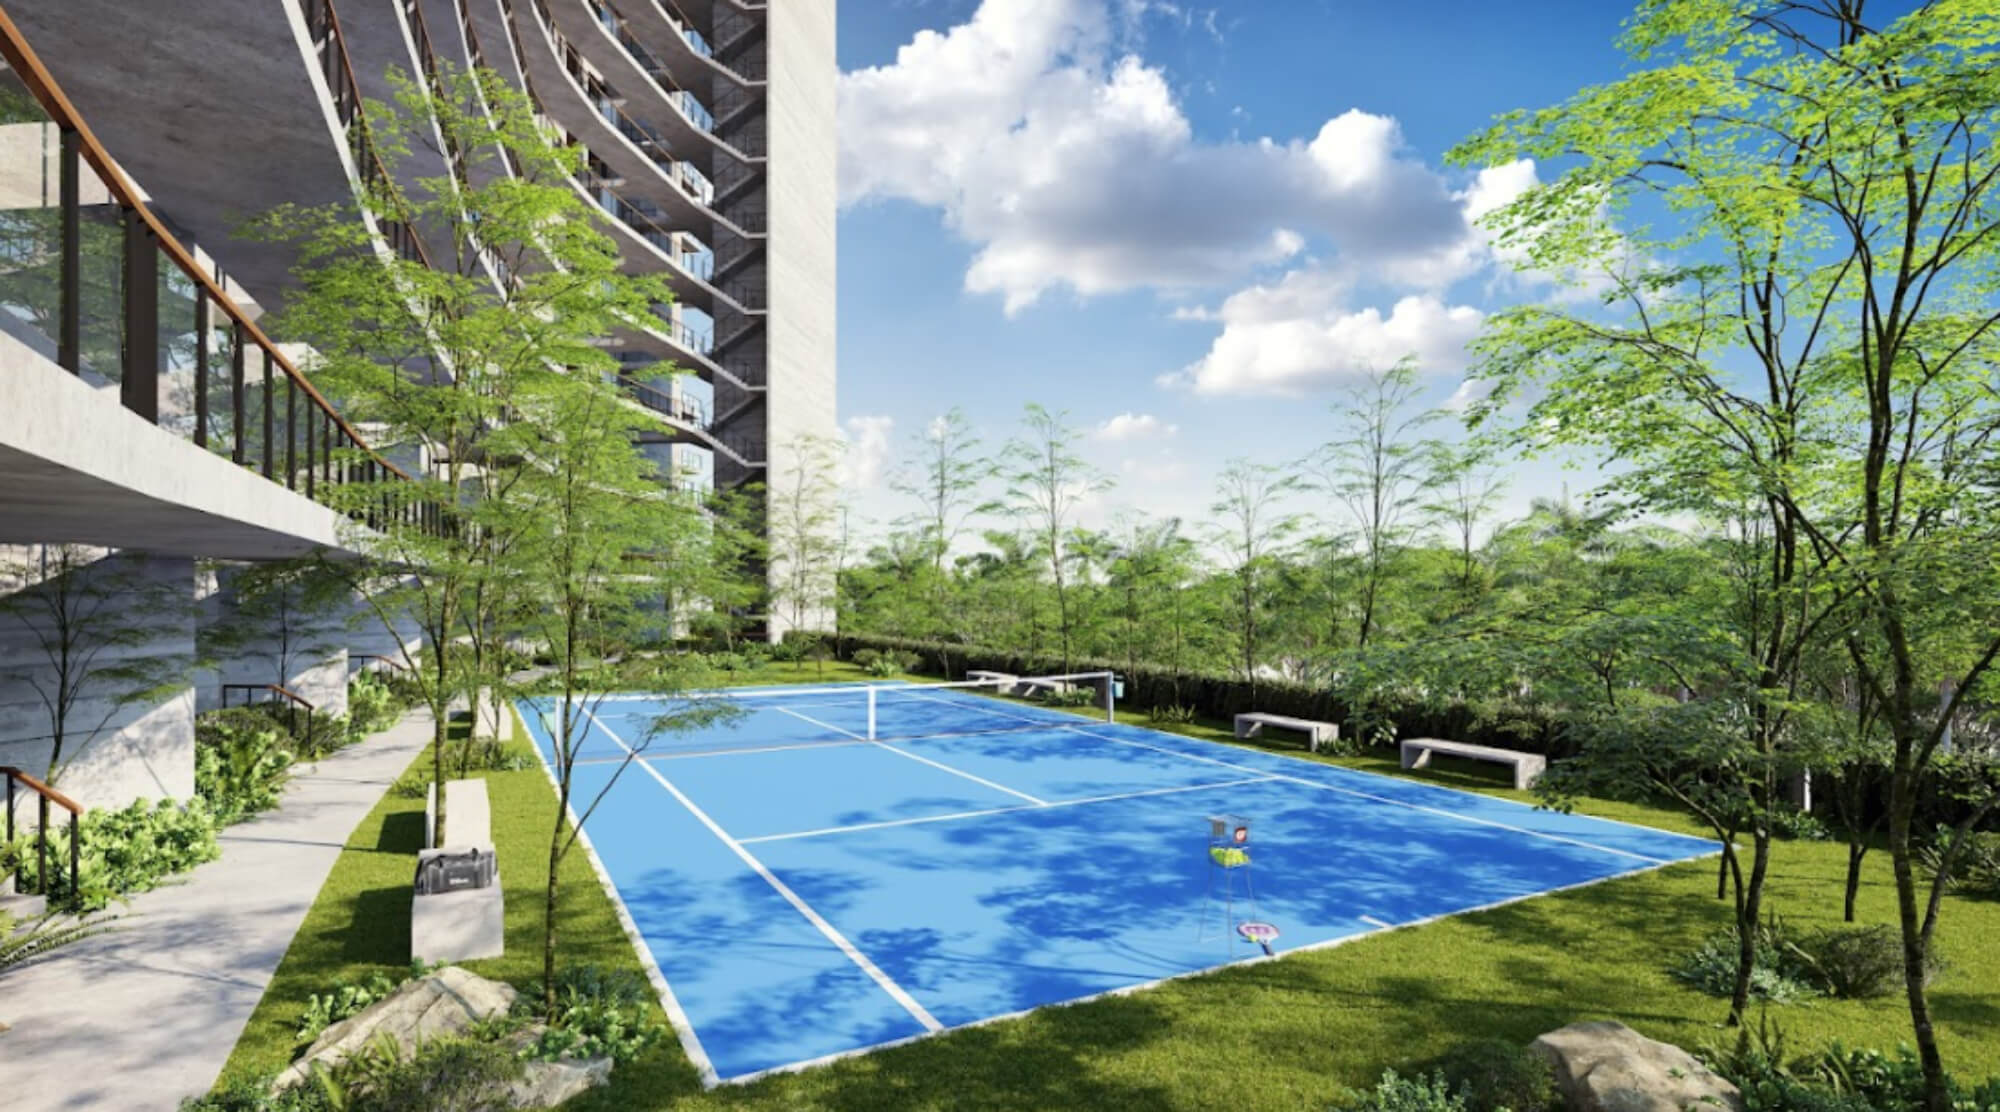 Penthouse con terraza de 25 m2, alberca familiar y alberca de adultos, area para perros, gimnasio, spa, y mas , en venta Cancún